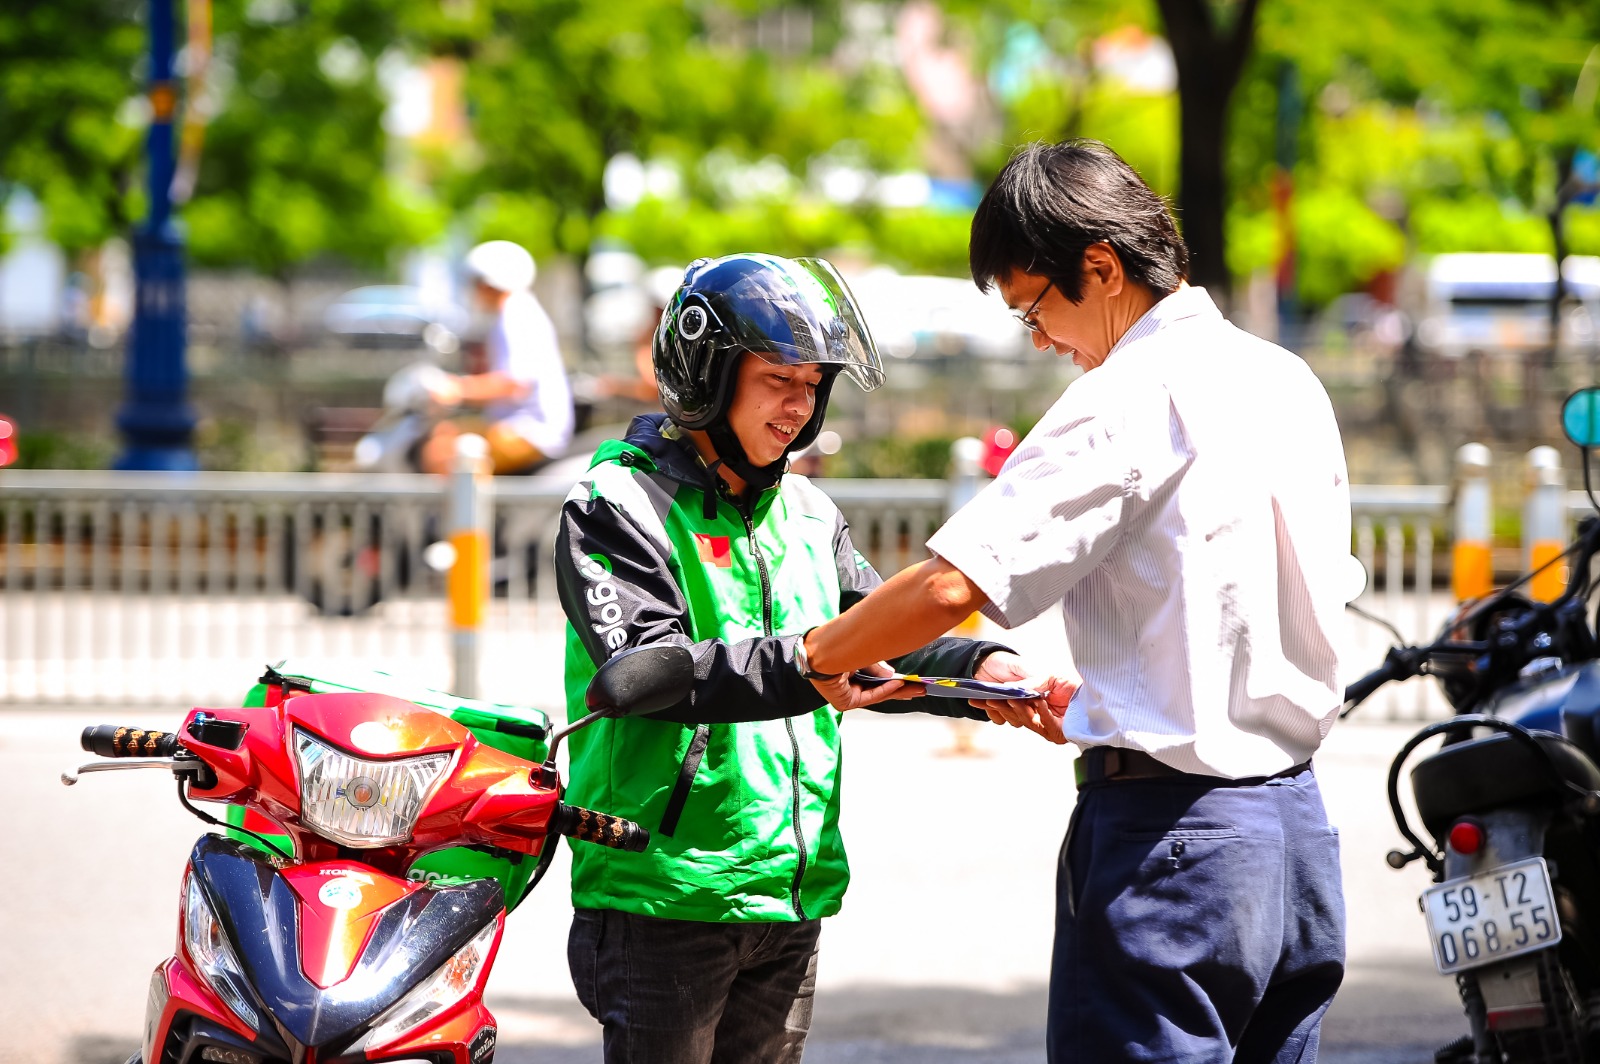 Gojek chính thức ra mắt ứng dụng và thương hiệu tại thị trường Việt Nam